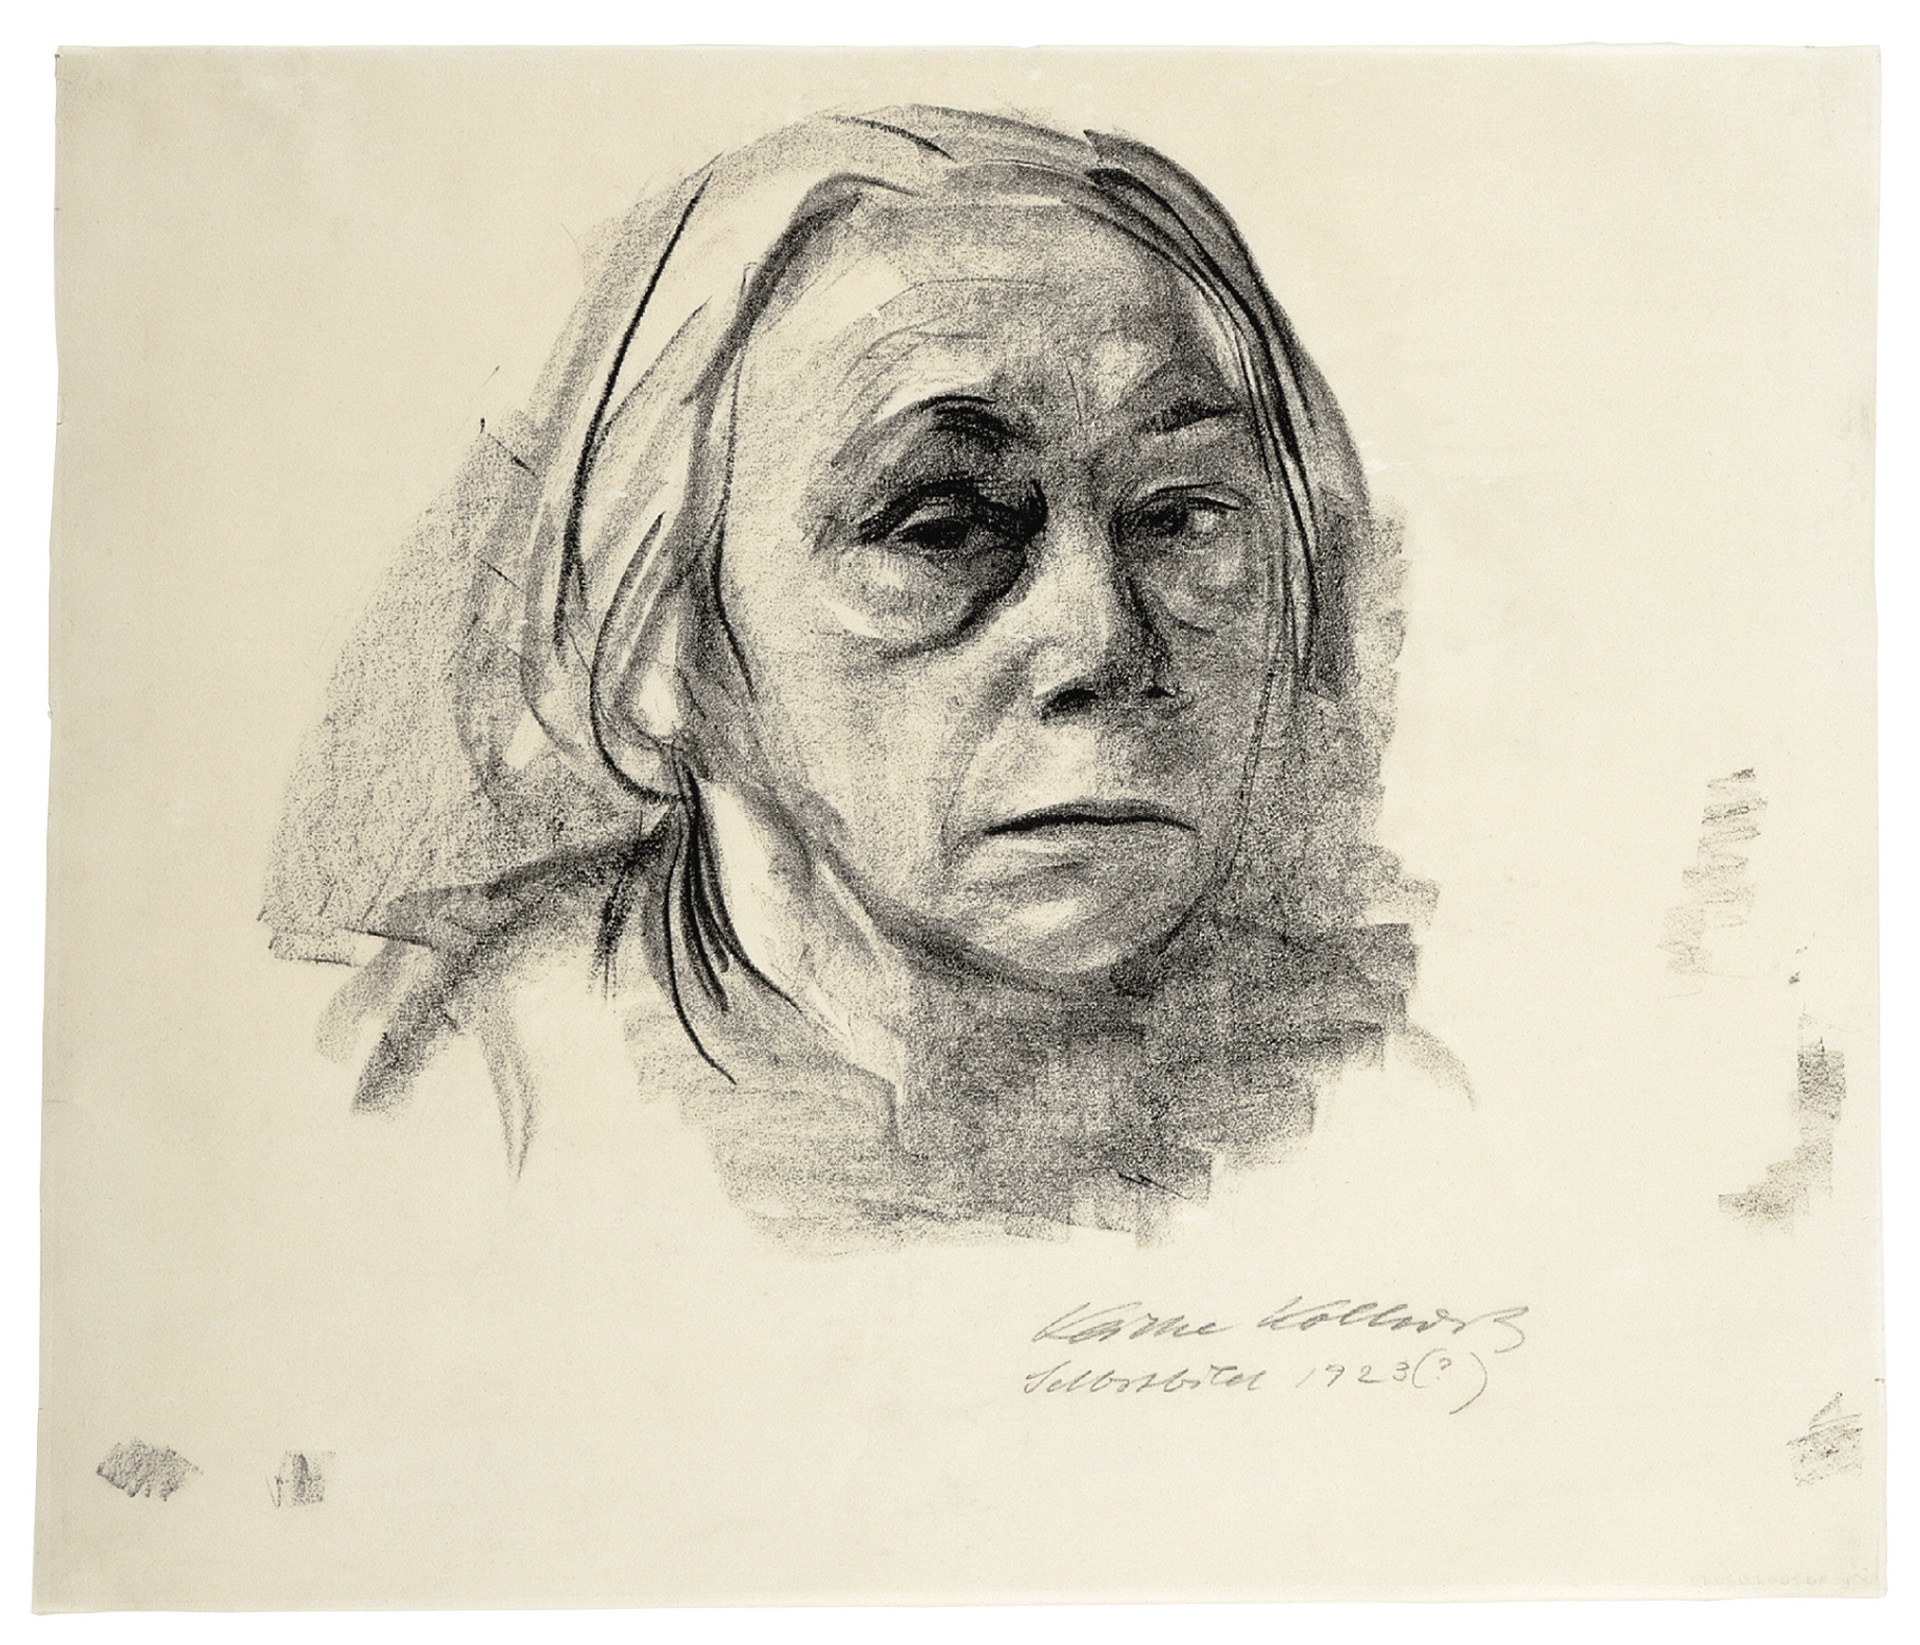 Käthe Kollwitz, Autoportrait de face, 1923 ?, fusain sur papier transparent, NT 988, Collection Kollwitz de Cologne © Käthe Kollwitz Museum Köln 